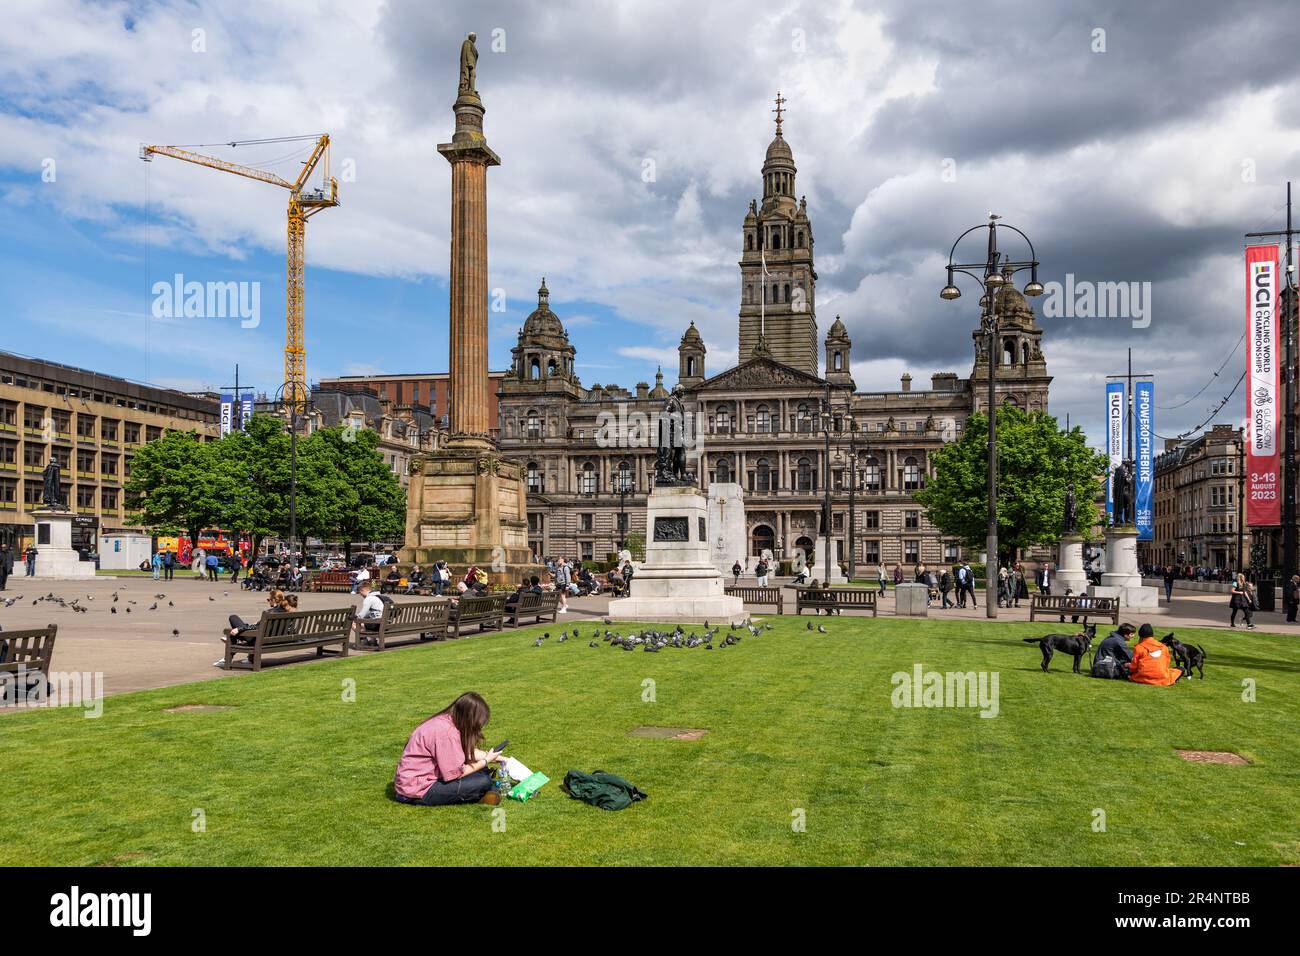 The George Square nel centro di Glasgow, in Scozia, Regno Unito. Glasgow City Chambers, Scott Monument e persone che visitano e si rilassano Foto Stock